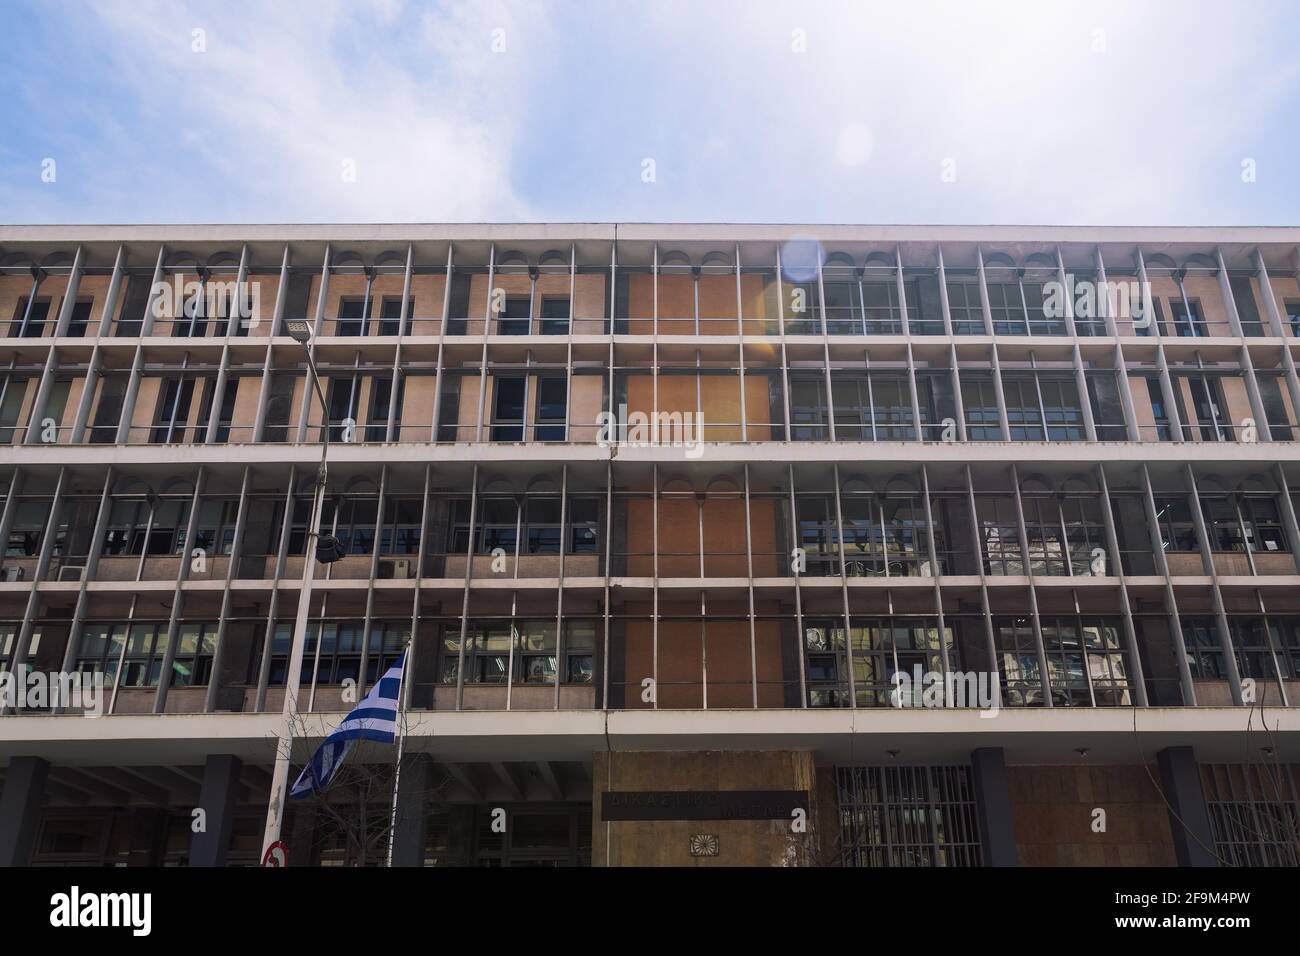 Salonicco, Grecia facciata del tribunale con bandiera ellenica che sventola. Esterno giorno vista ad angolo basso dei tribunali della giustizia edificio con segno. Foto Stock